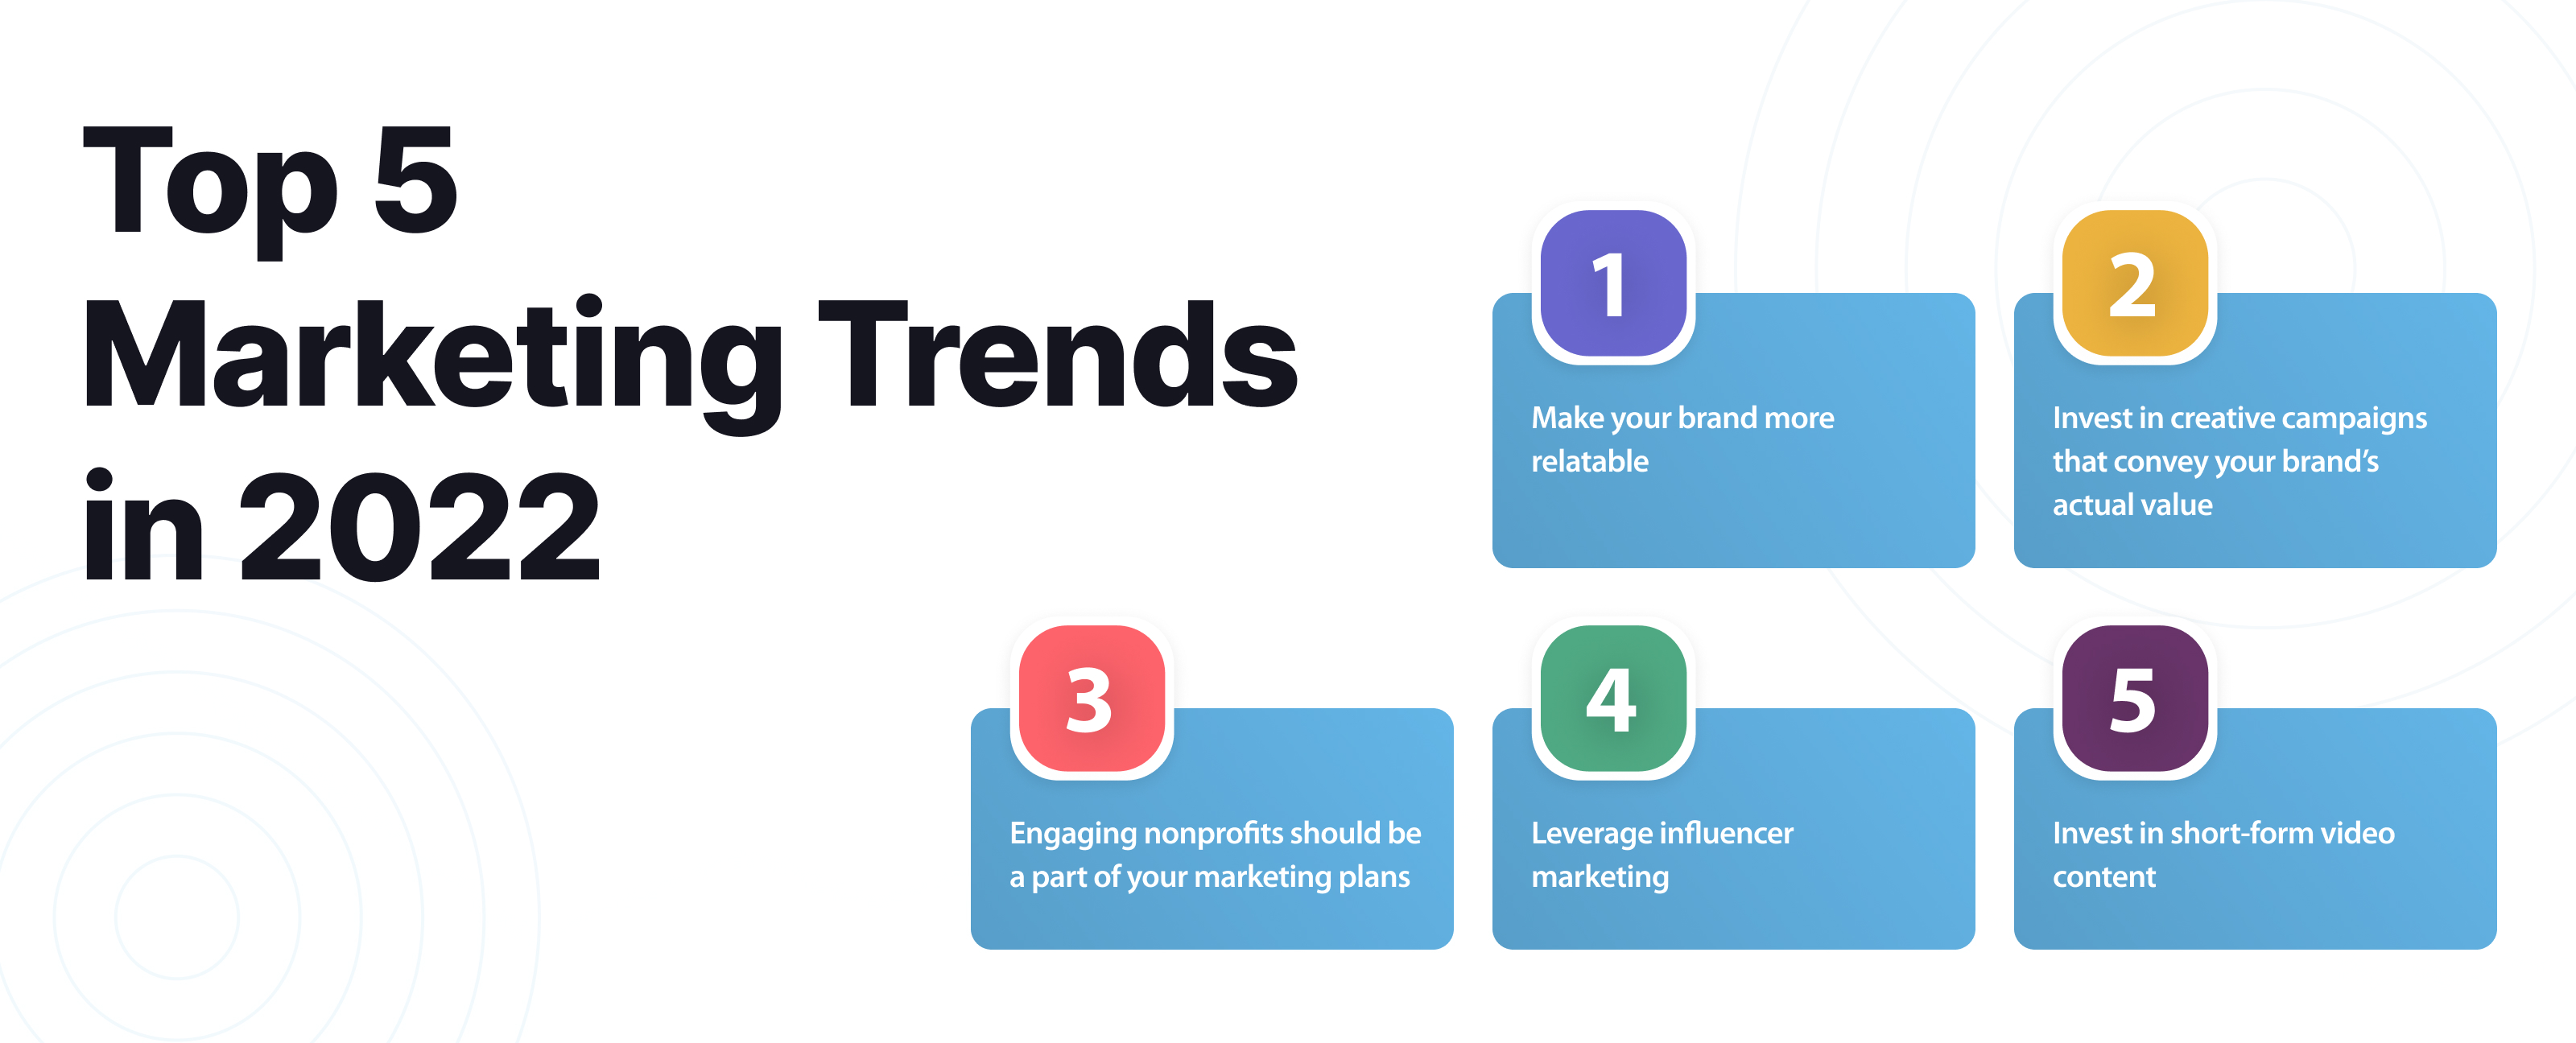 Top 5 Marketing Trends in 2022